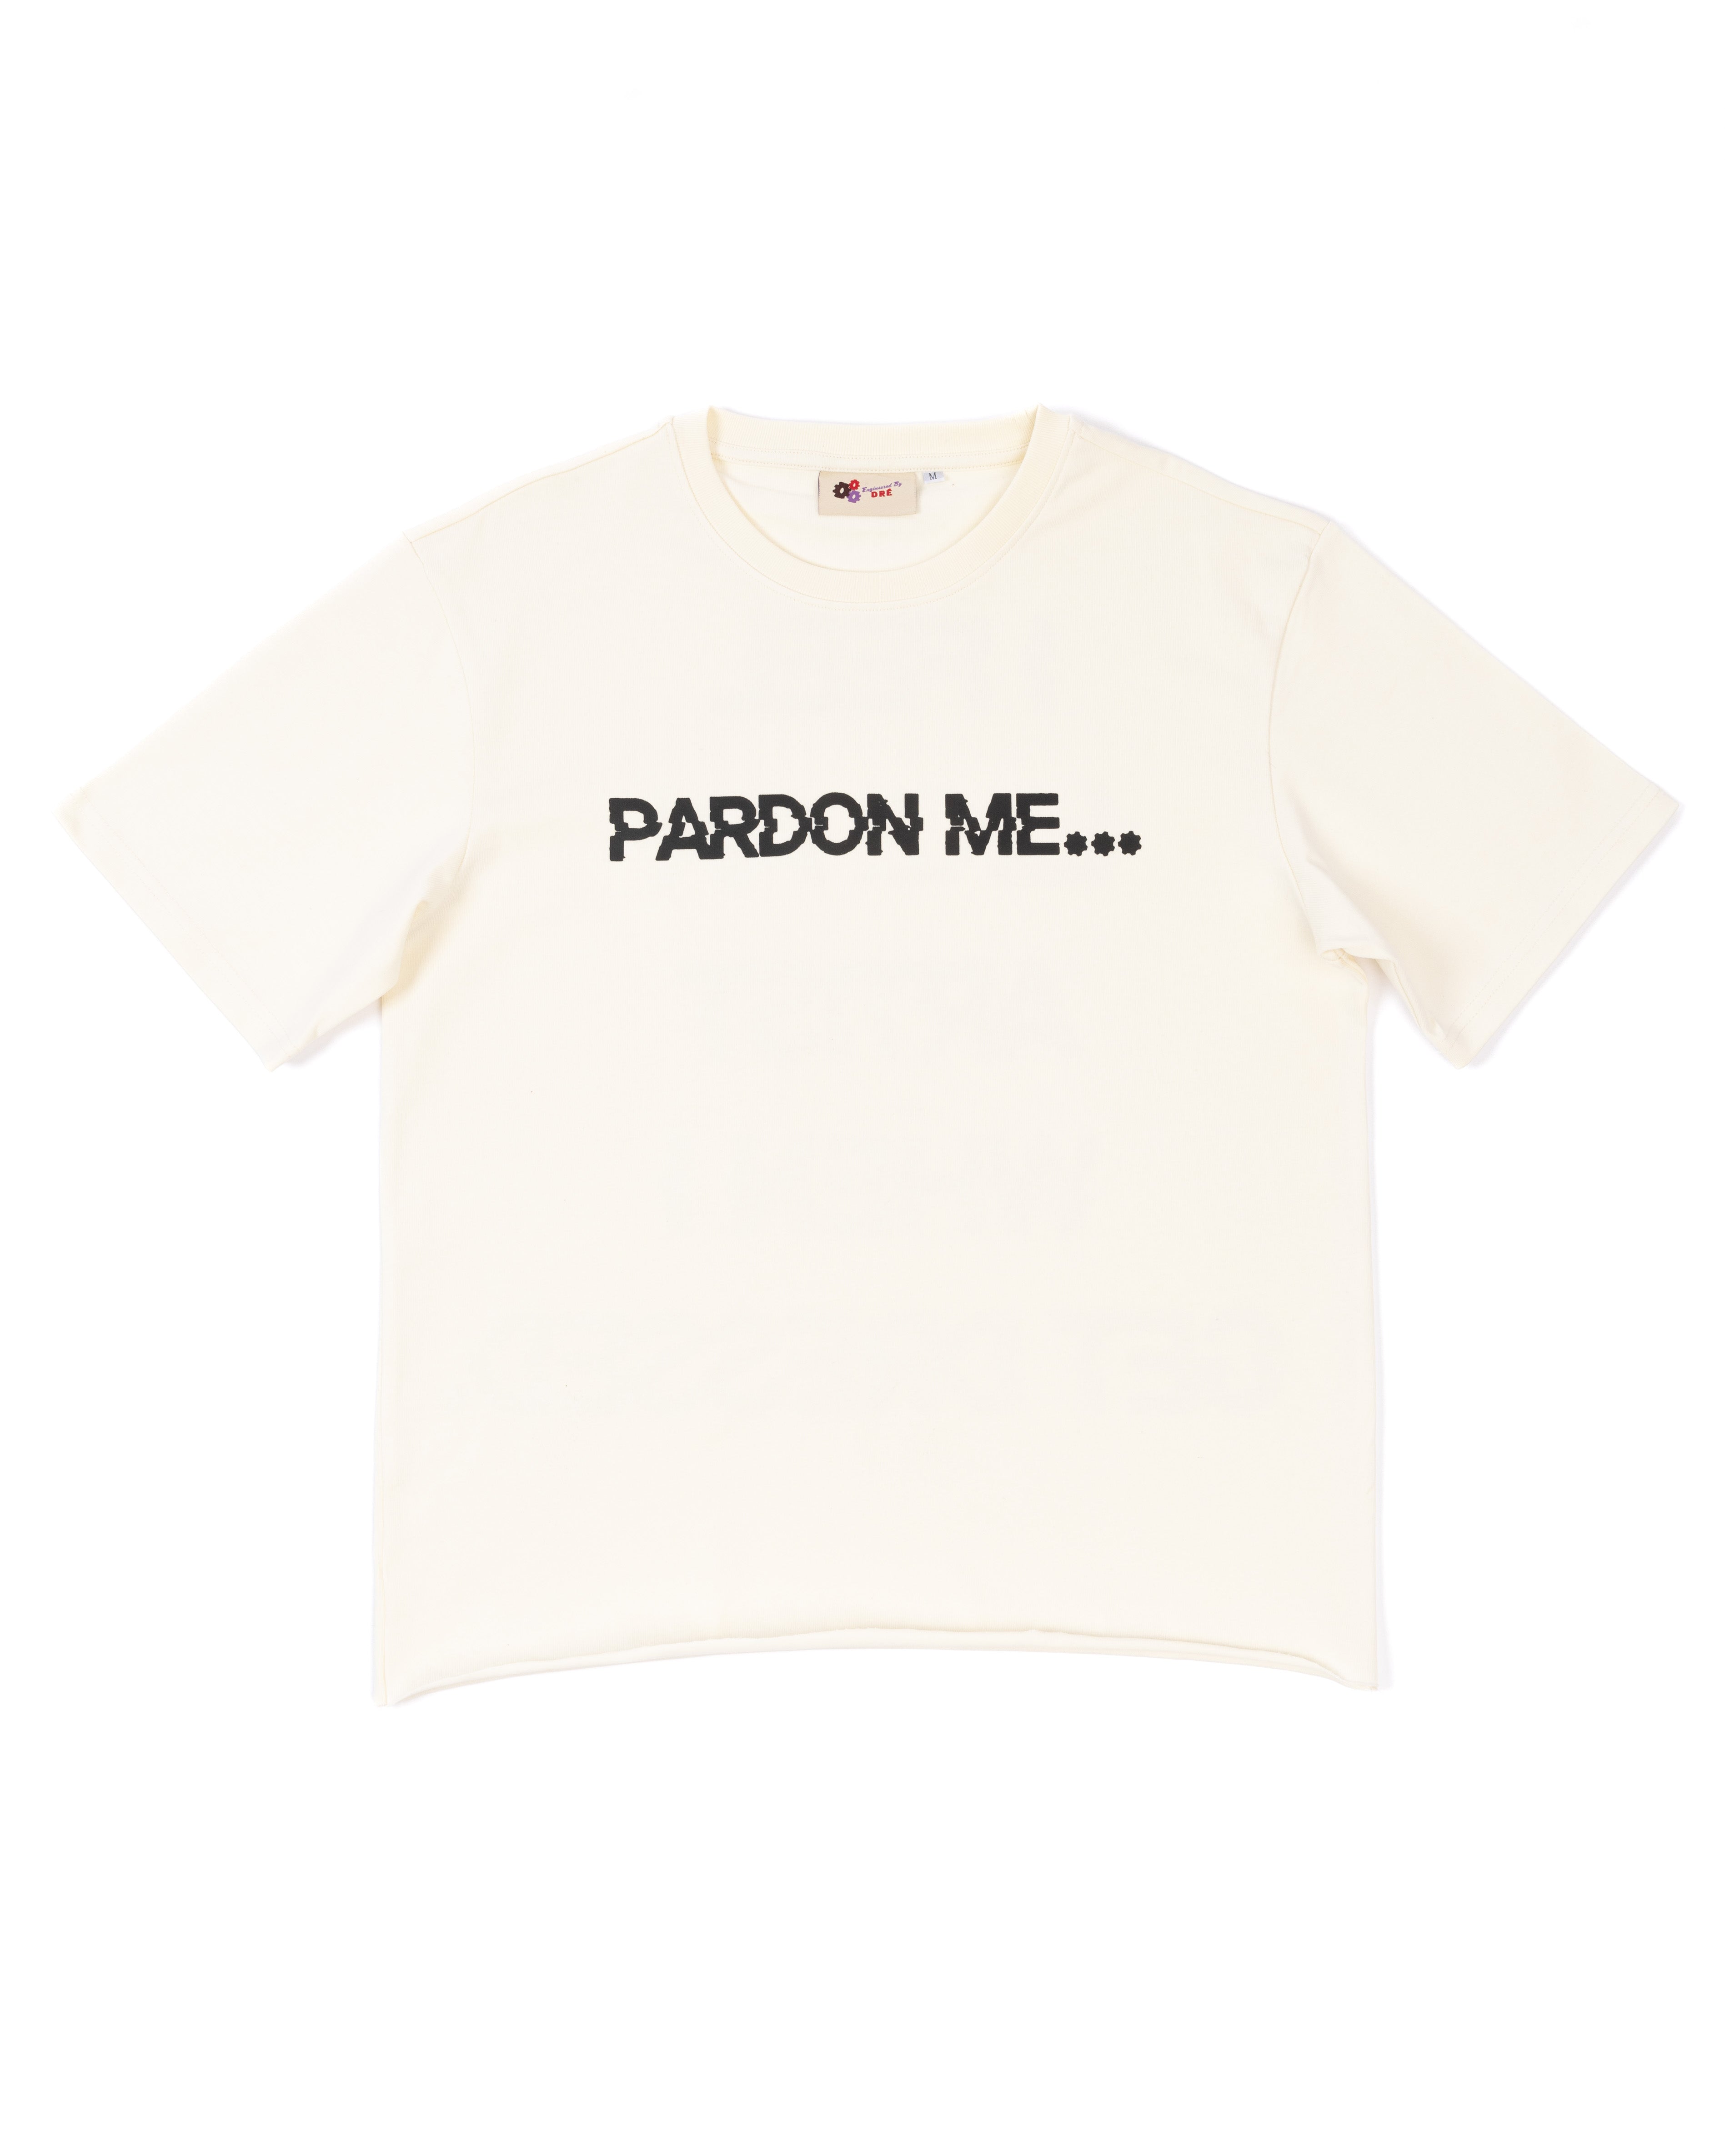 [CREAME] Pardon Me Tee